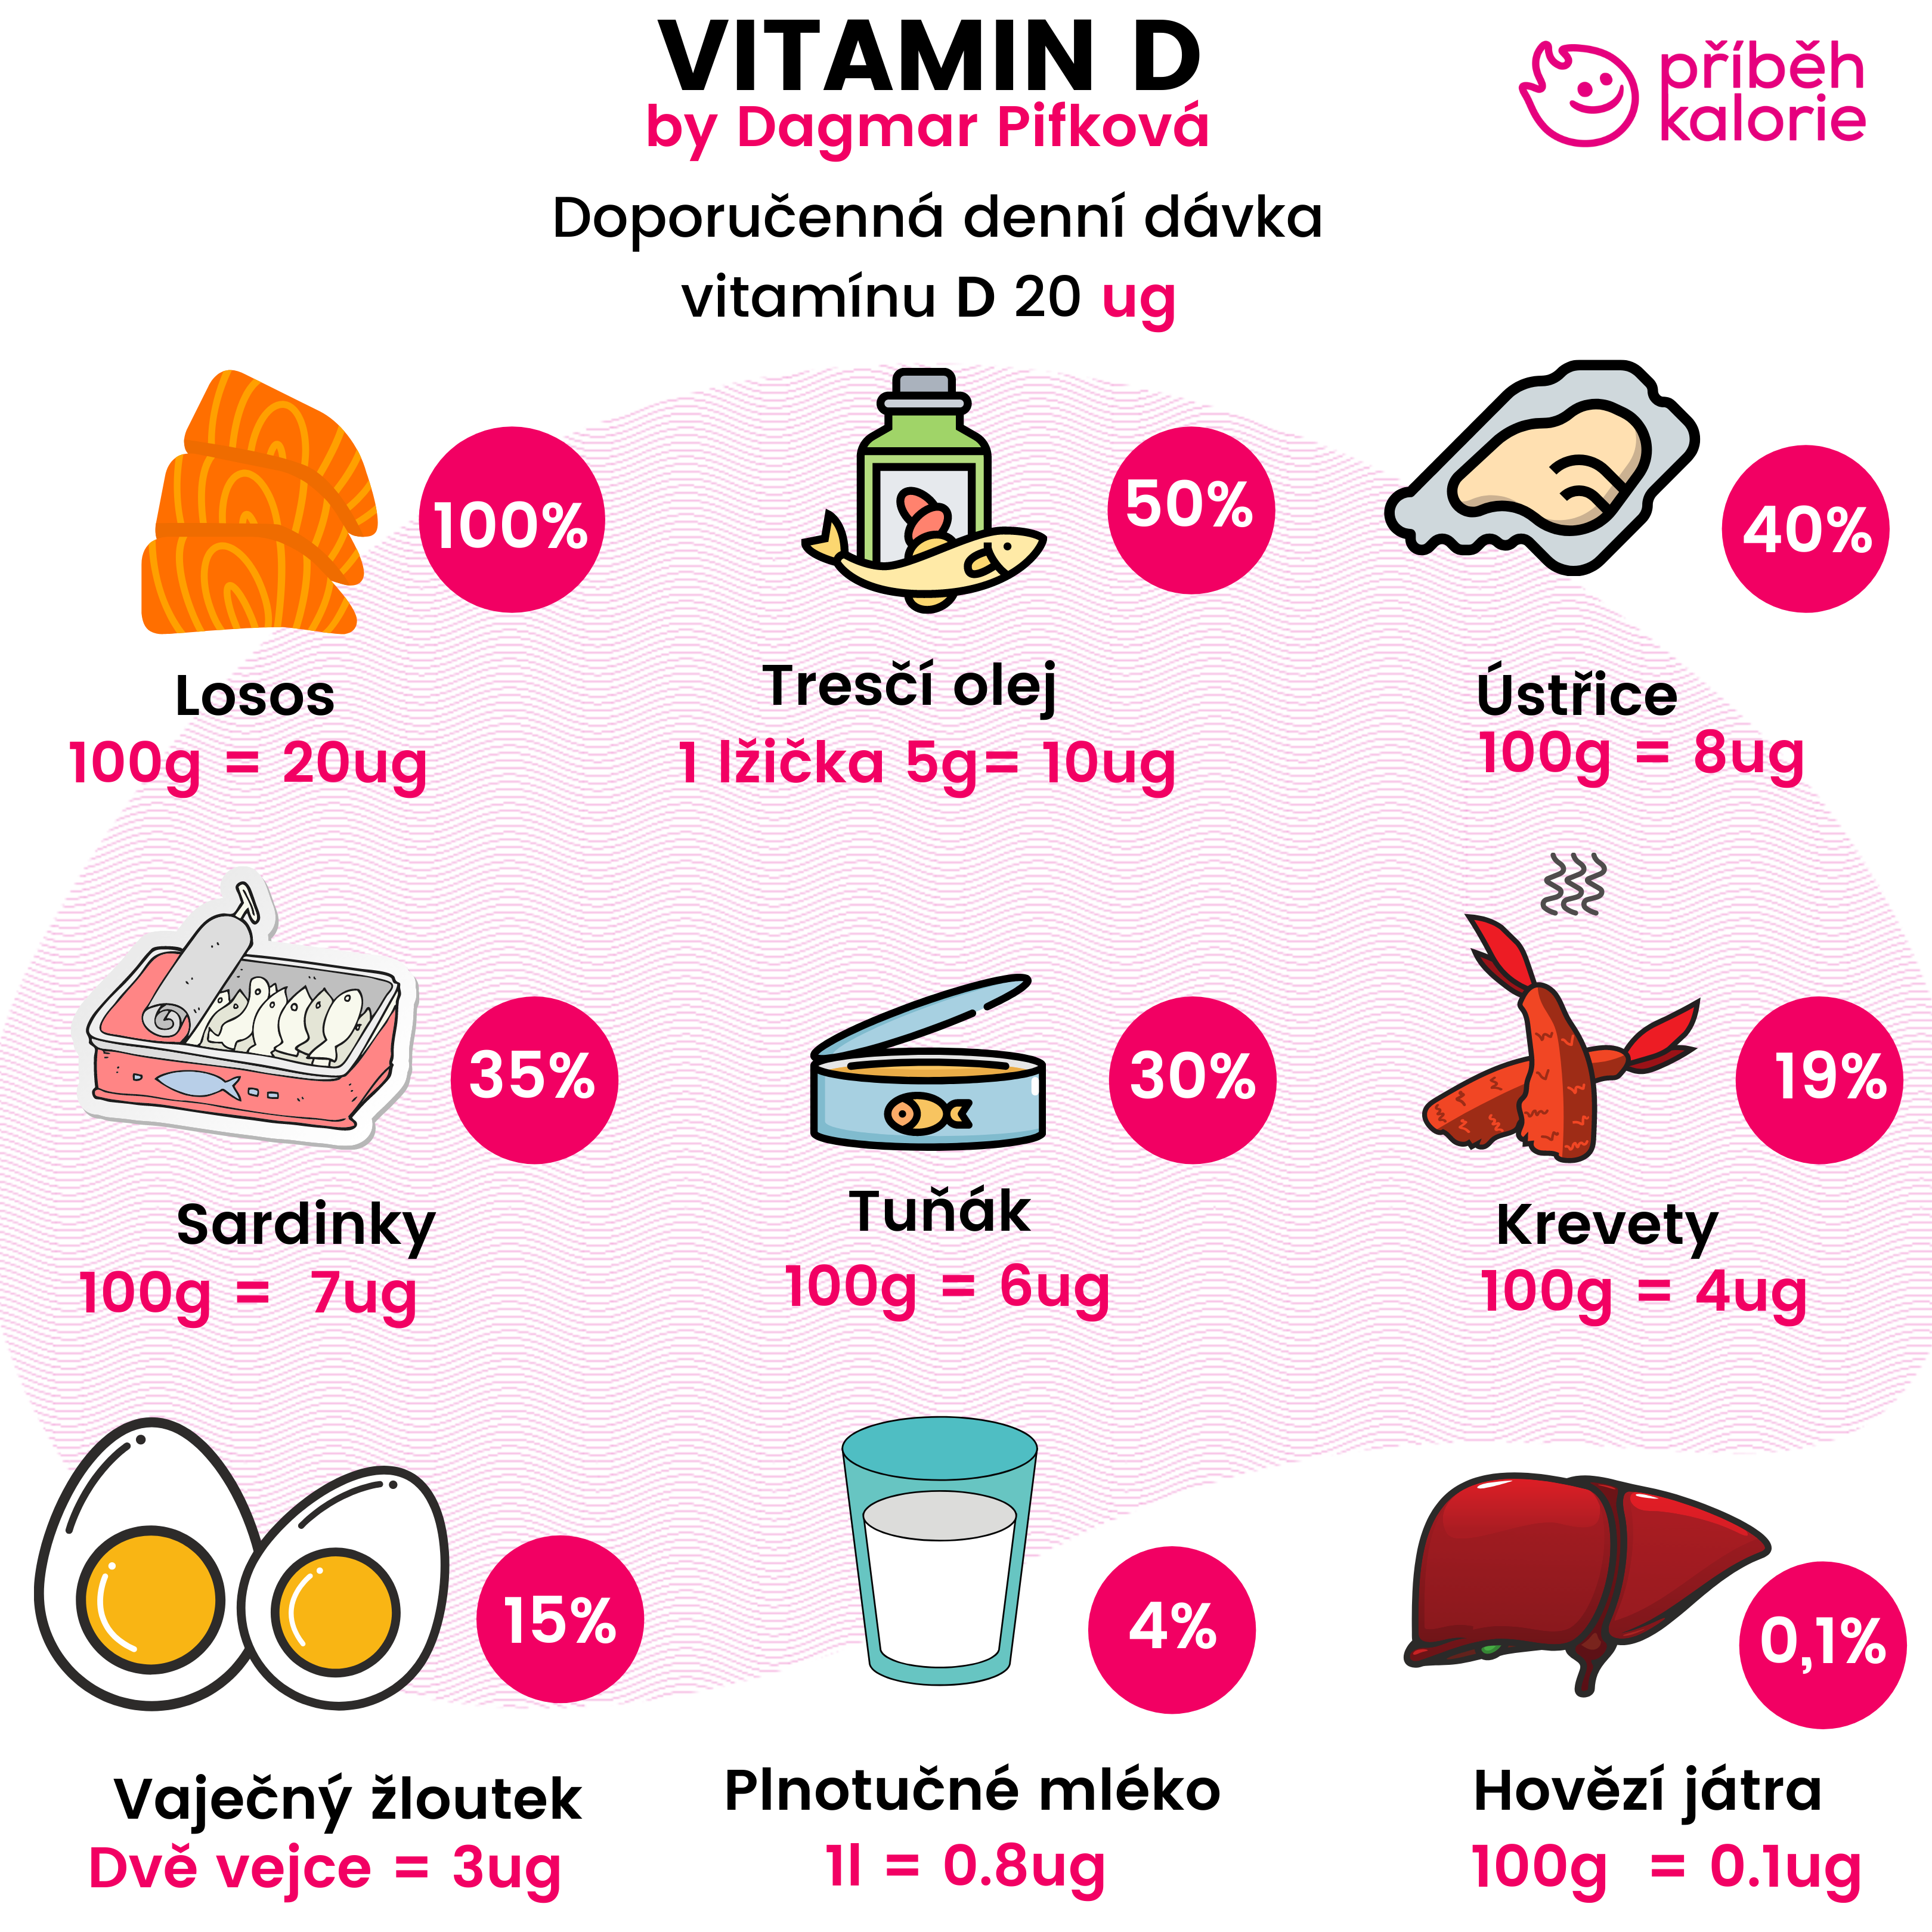 Doporučená denní dávka vitamínu D